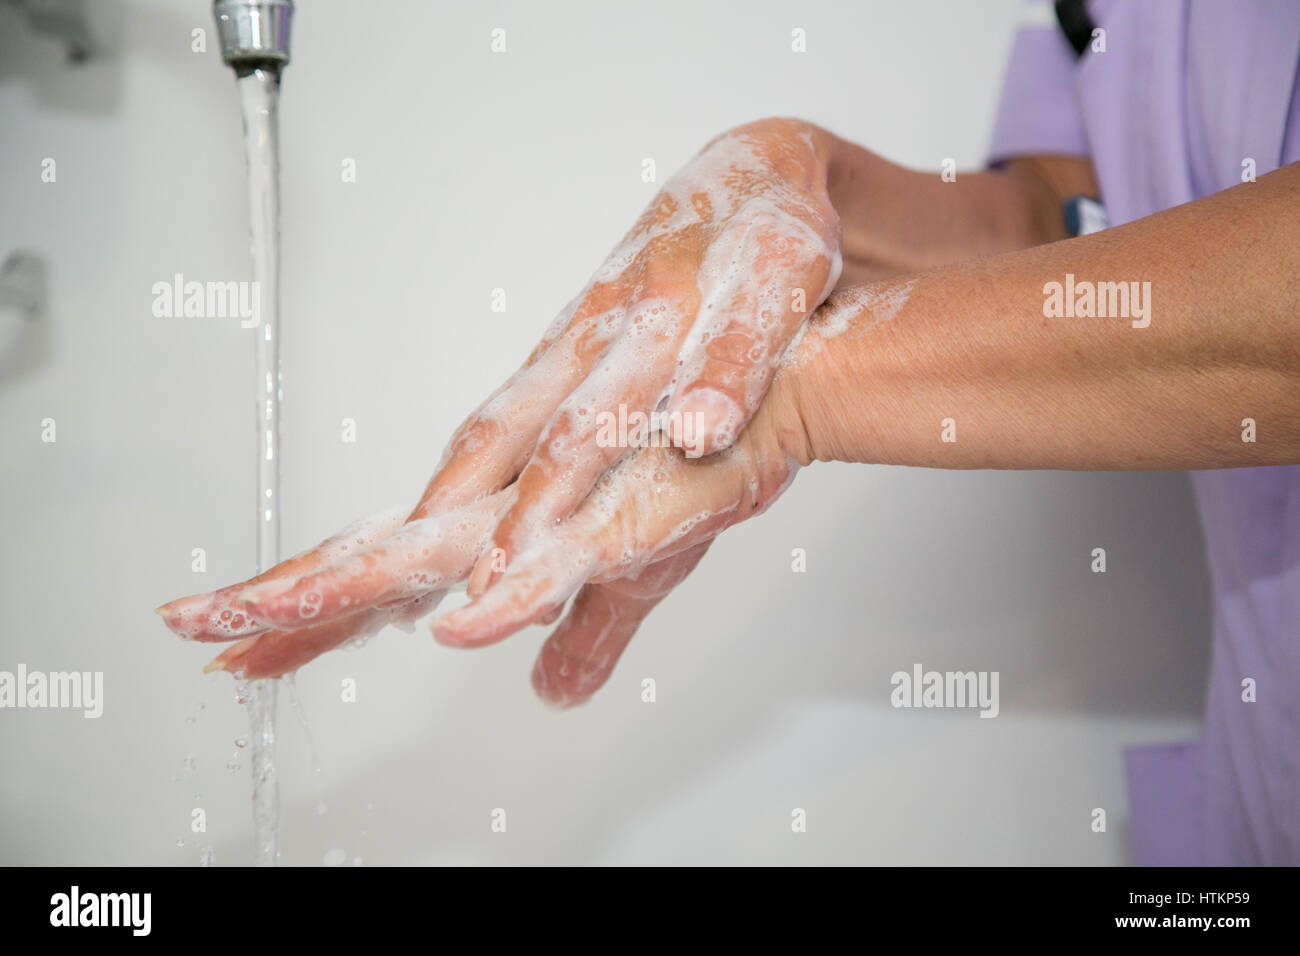 Lavarsi le mani con acqua e sapone in ambiente clinico Foto Stock